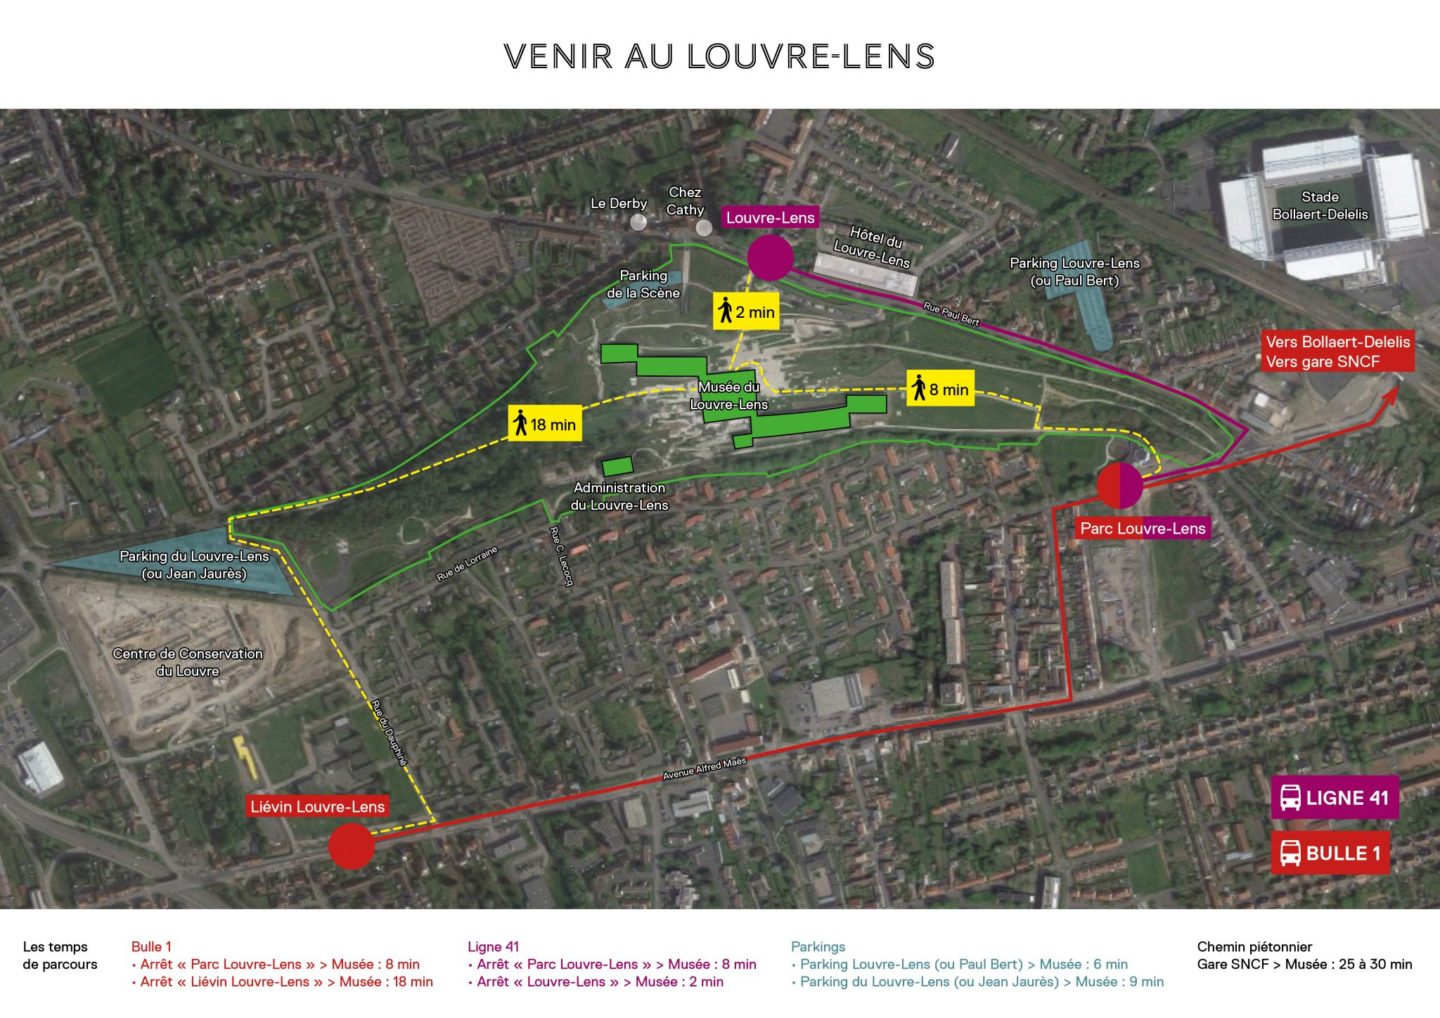 Comment venir au Louvre-Lens
Plan du Louvre-Lens et de ses accès